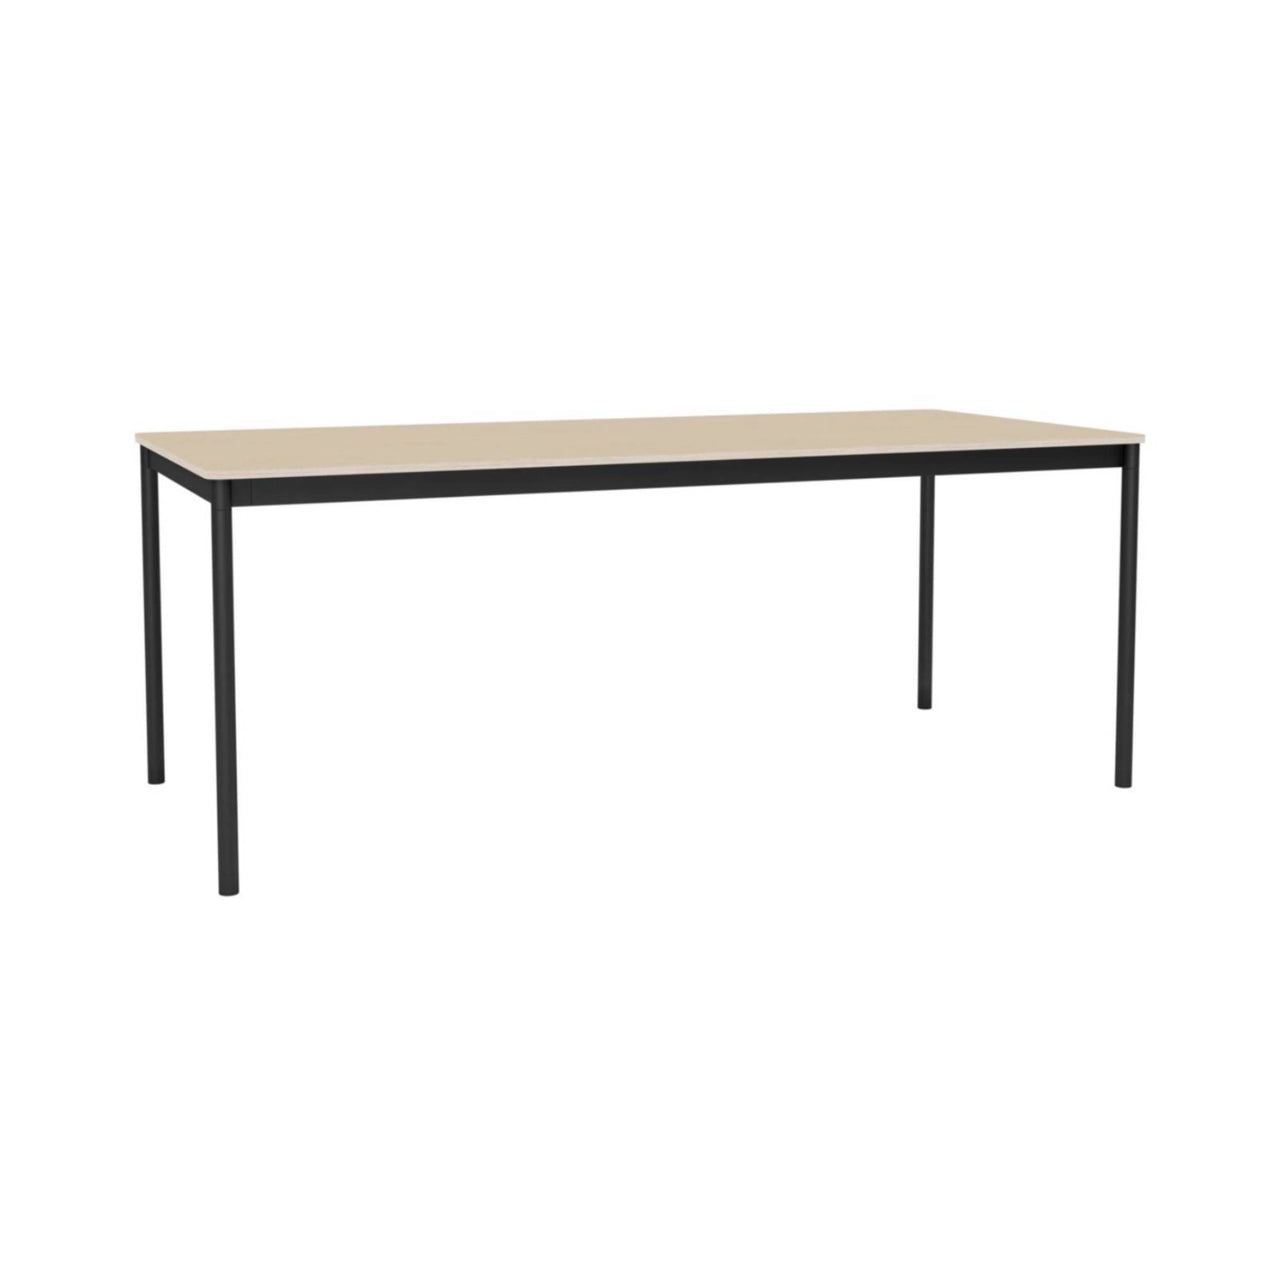 Base Table: Medium + Oak Veneer + Plywood Edge + Black